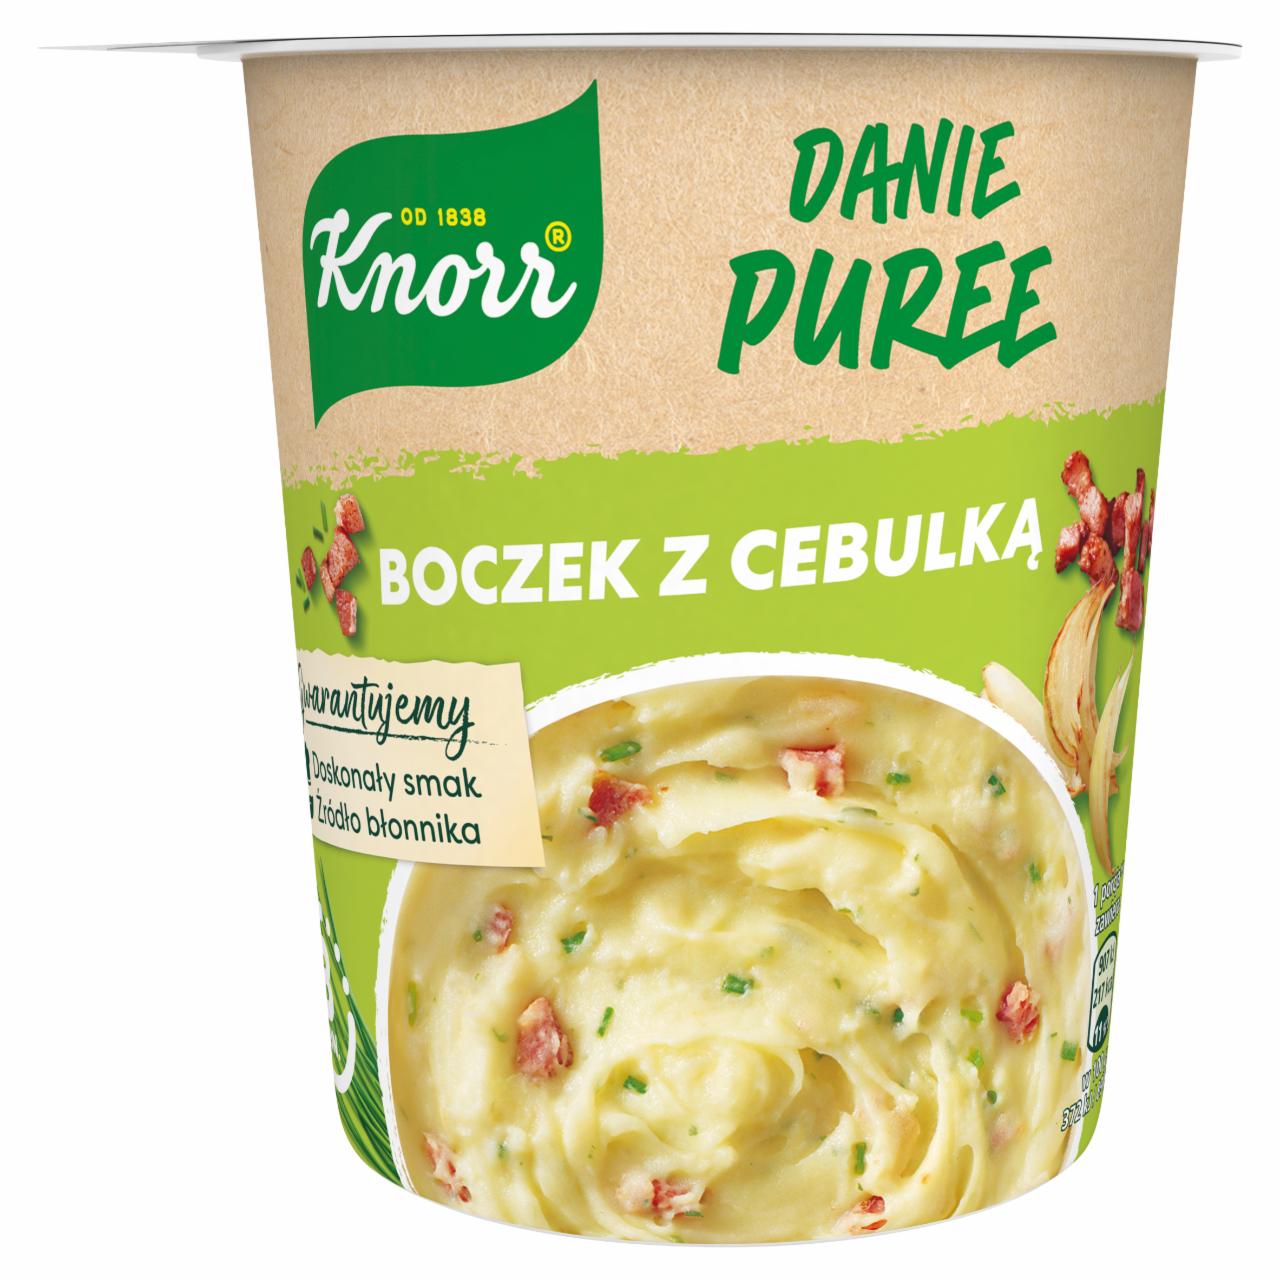 Zdjęcia - Danie Puree Boczek z cebulką Knorr